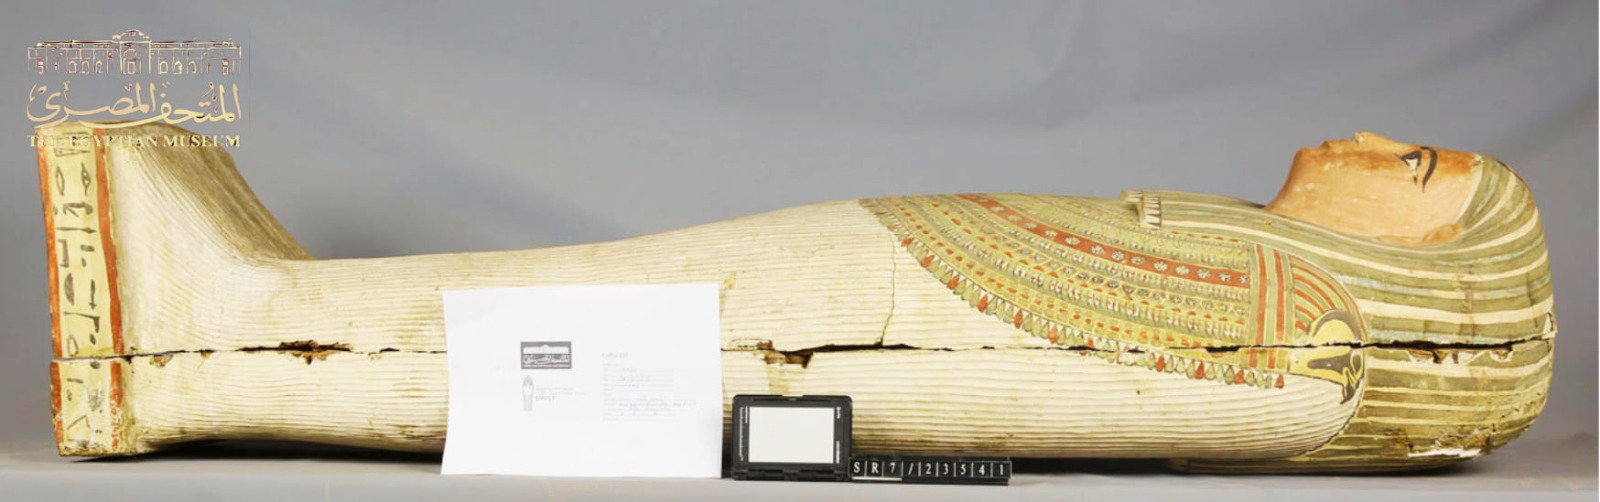 توابيت خشبية من العصور القديمة بالمتحف المصري